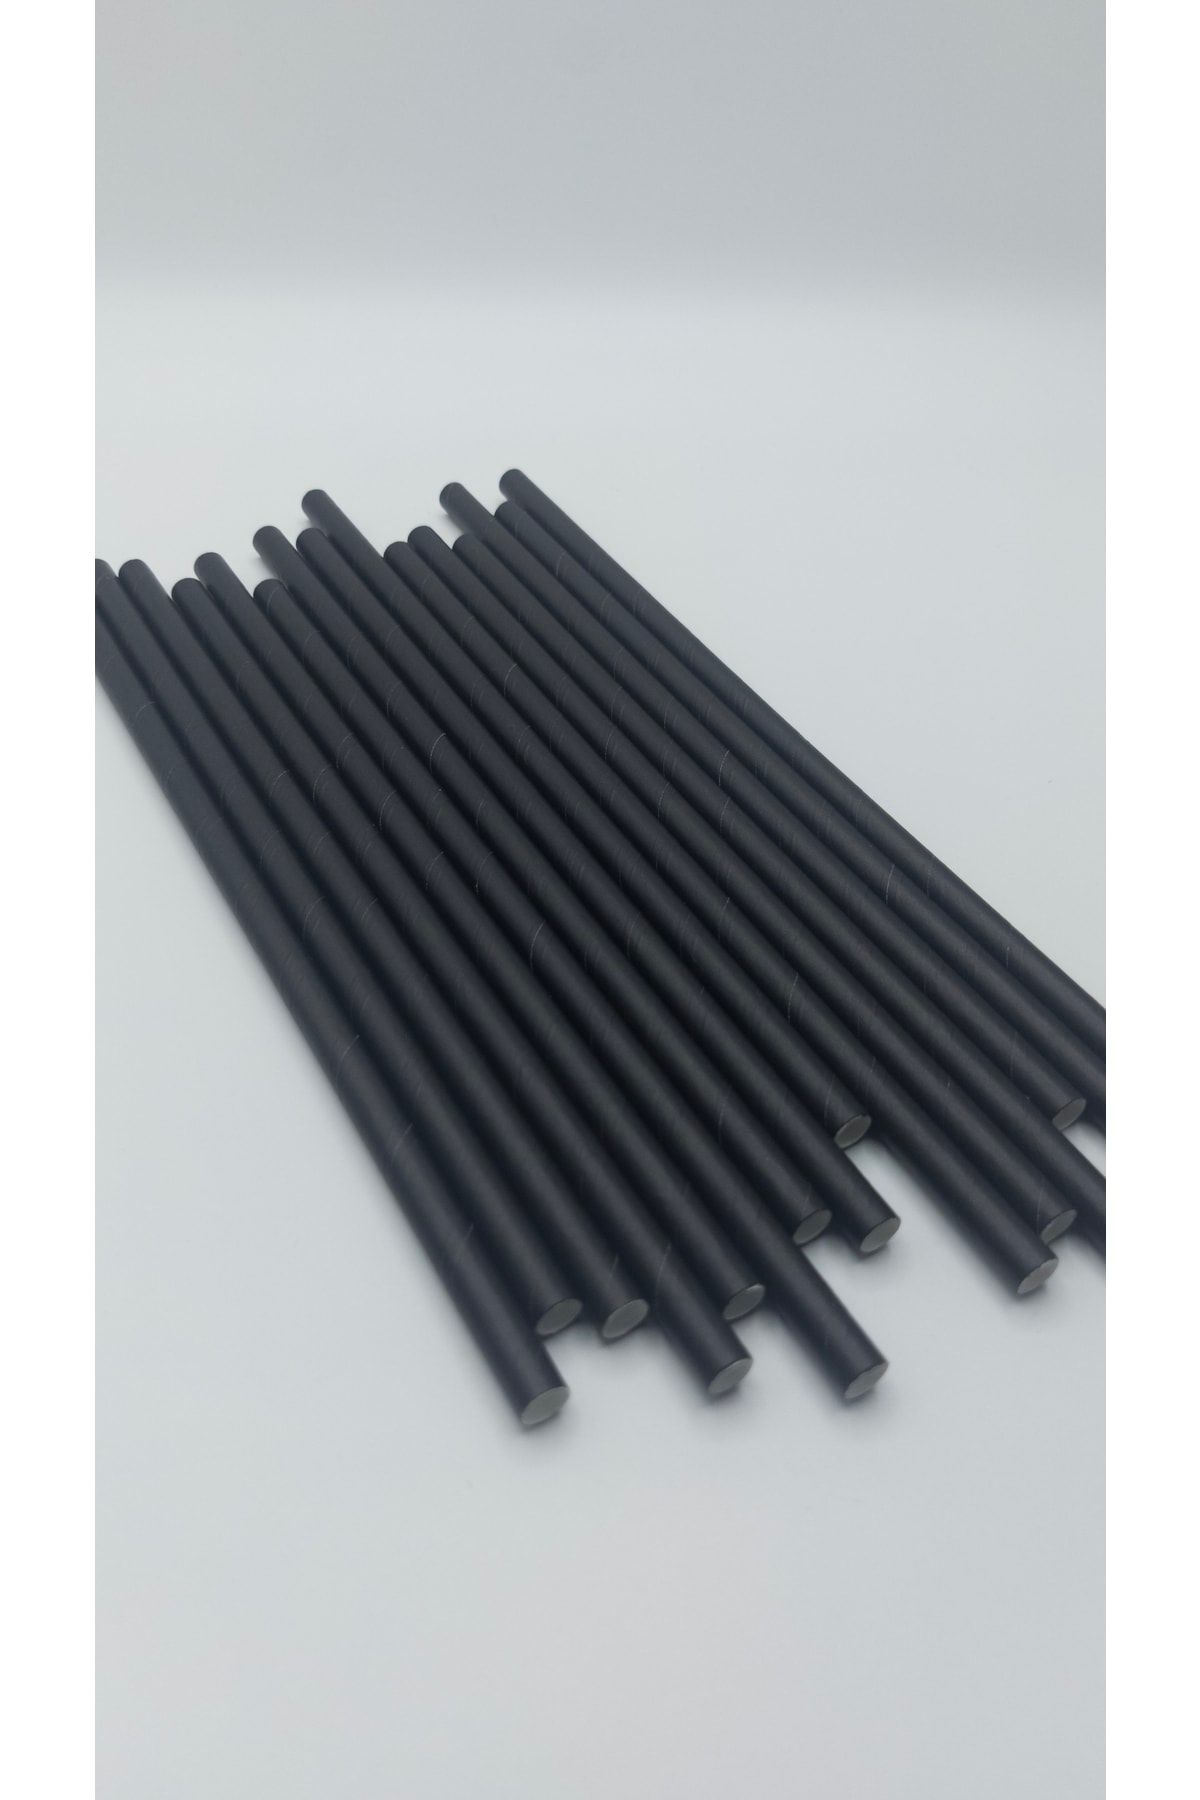 Pars Kağıt Pipet Siyah 100 Adet 8 Mm *24 Cm- Doğayla Dost Geri Dönüştürülebilir Kağıt Pipet-kalın Pipet